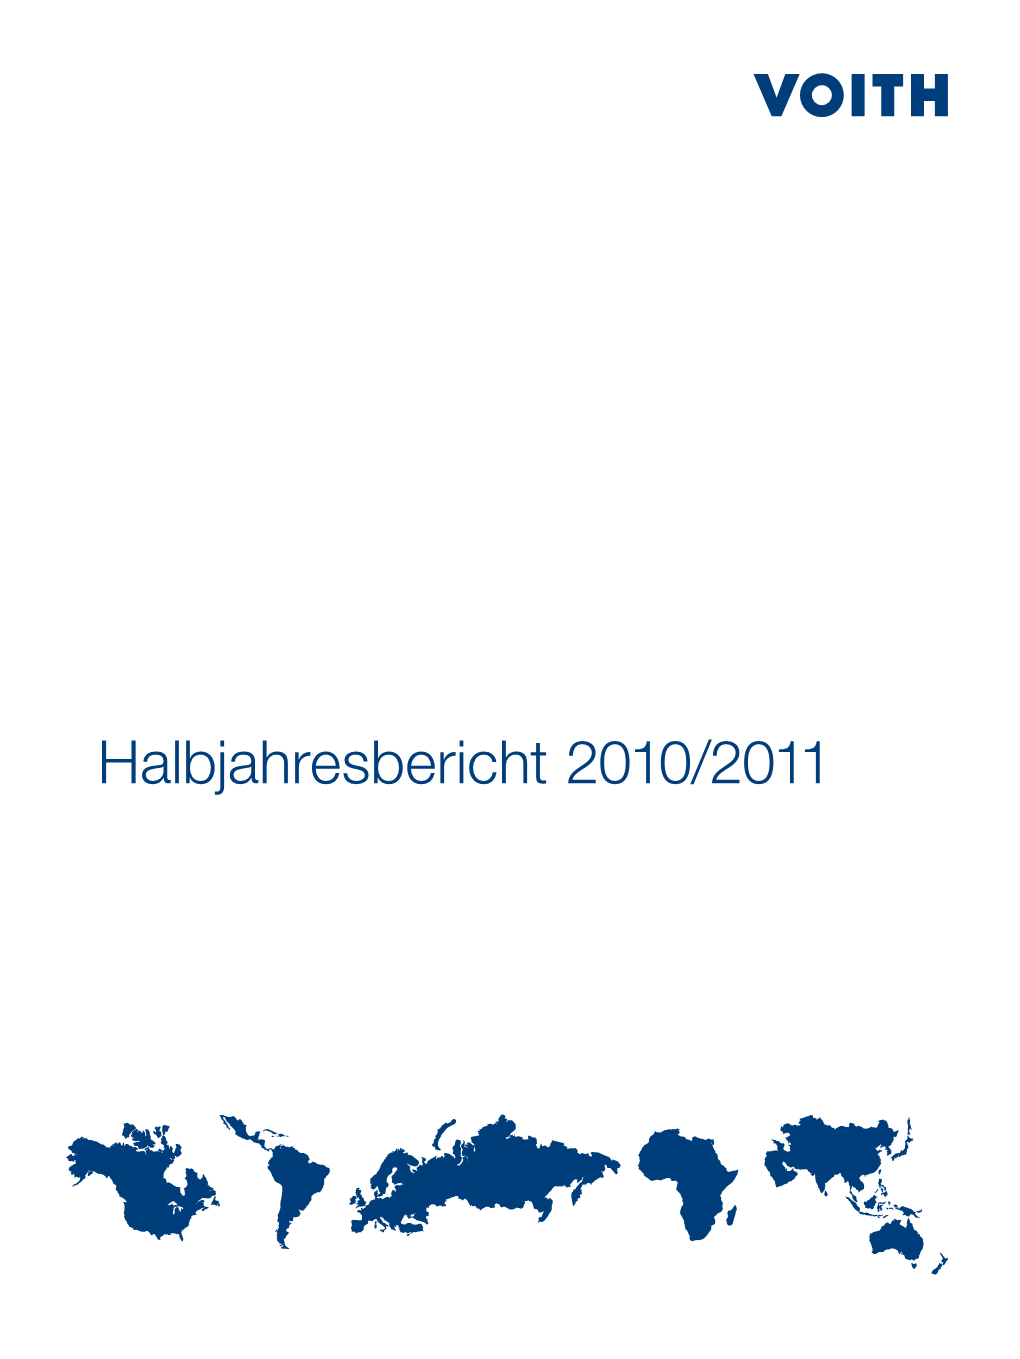 Halbjahresbericht 2010/2011 Voith in Zahlen